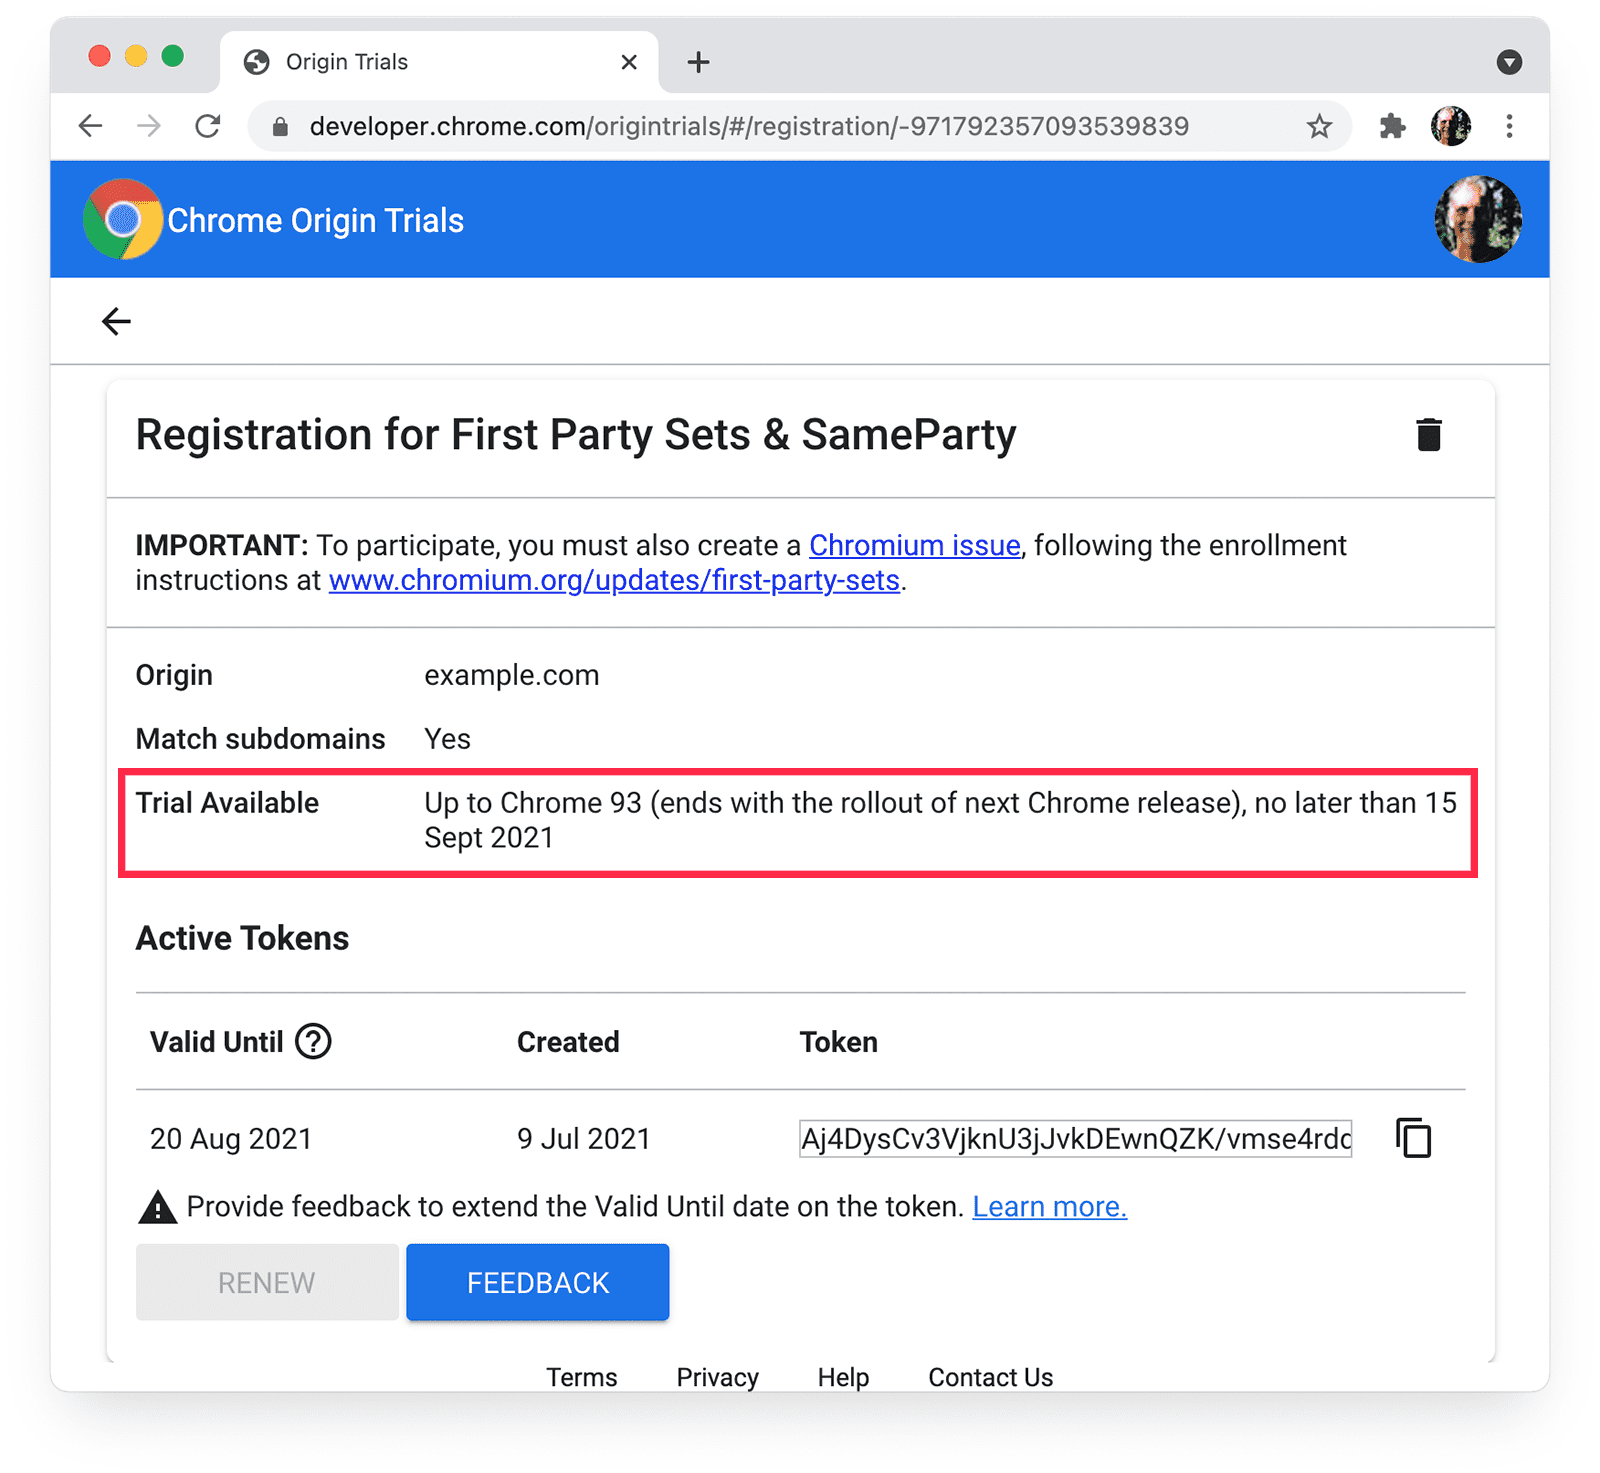 Chrome Kaynak Denemeleri
sayfası. SameParty ile deneme kullanılabilir ayrıntıları vurgulanıyor.